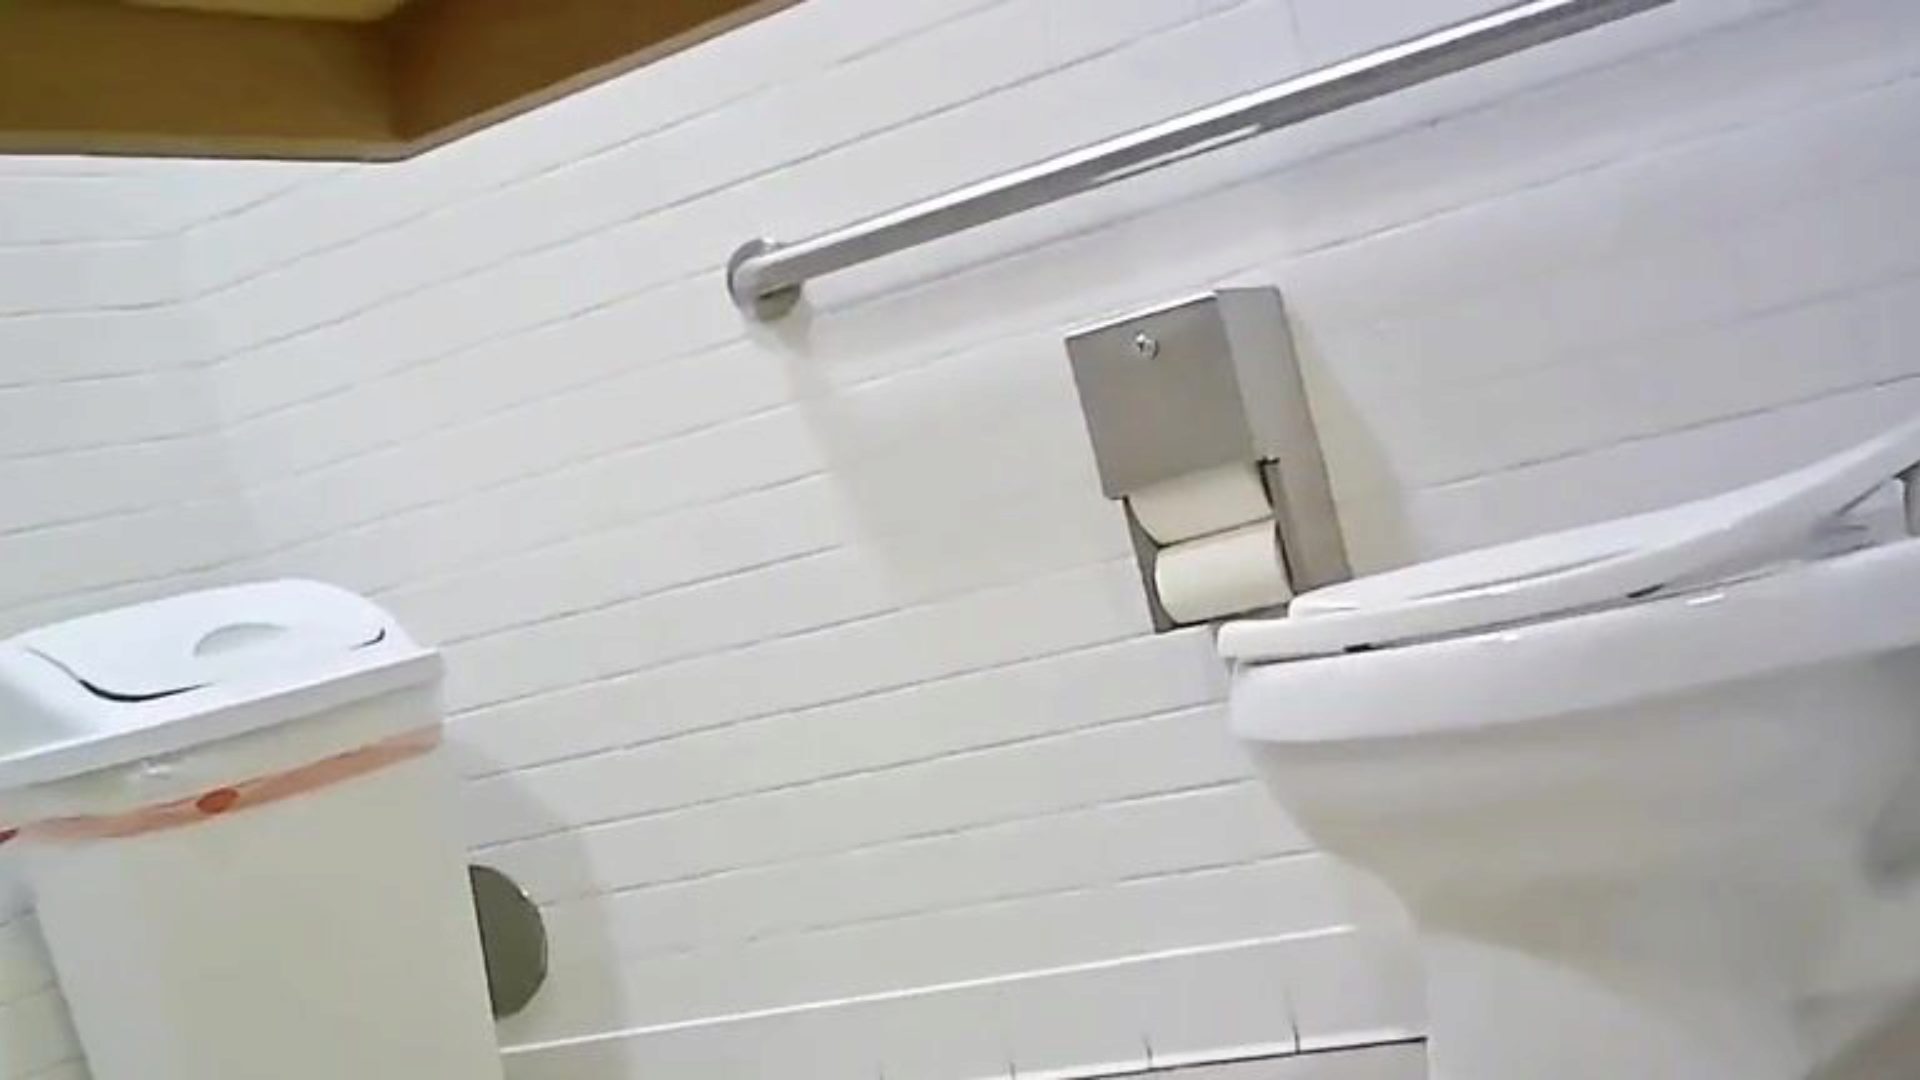 versteckte Toilette Kamera-fit Mädchen vollendeten Arsch überprüfen Sie dieses heraus, sagen Sie mir, was Sie denken; p ’